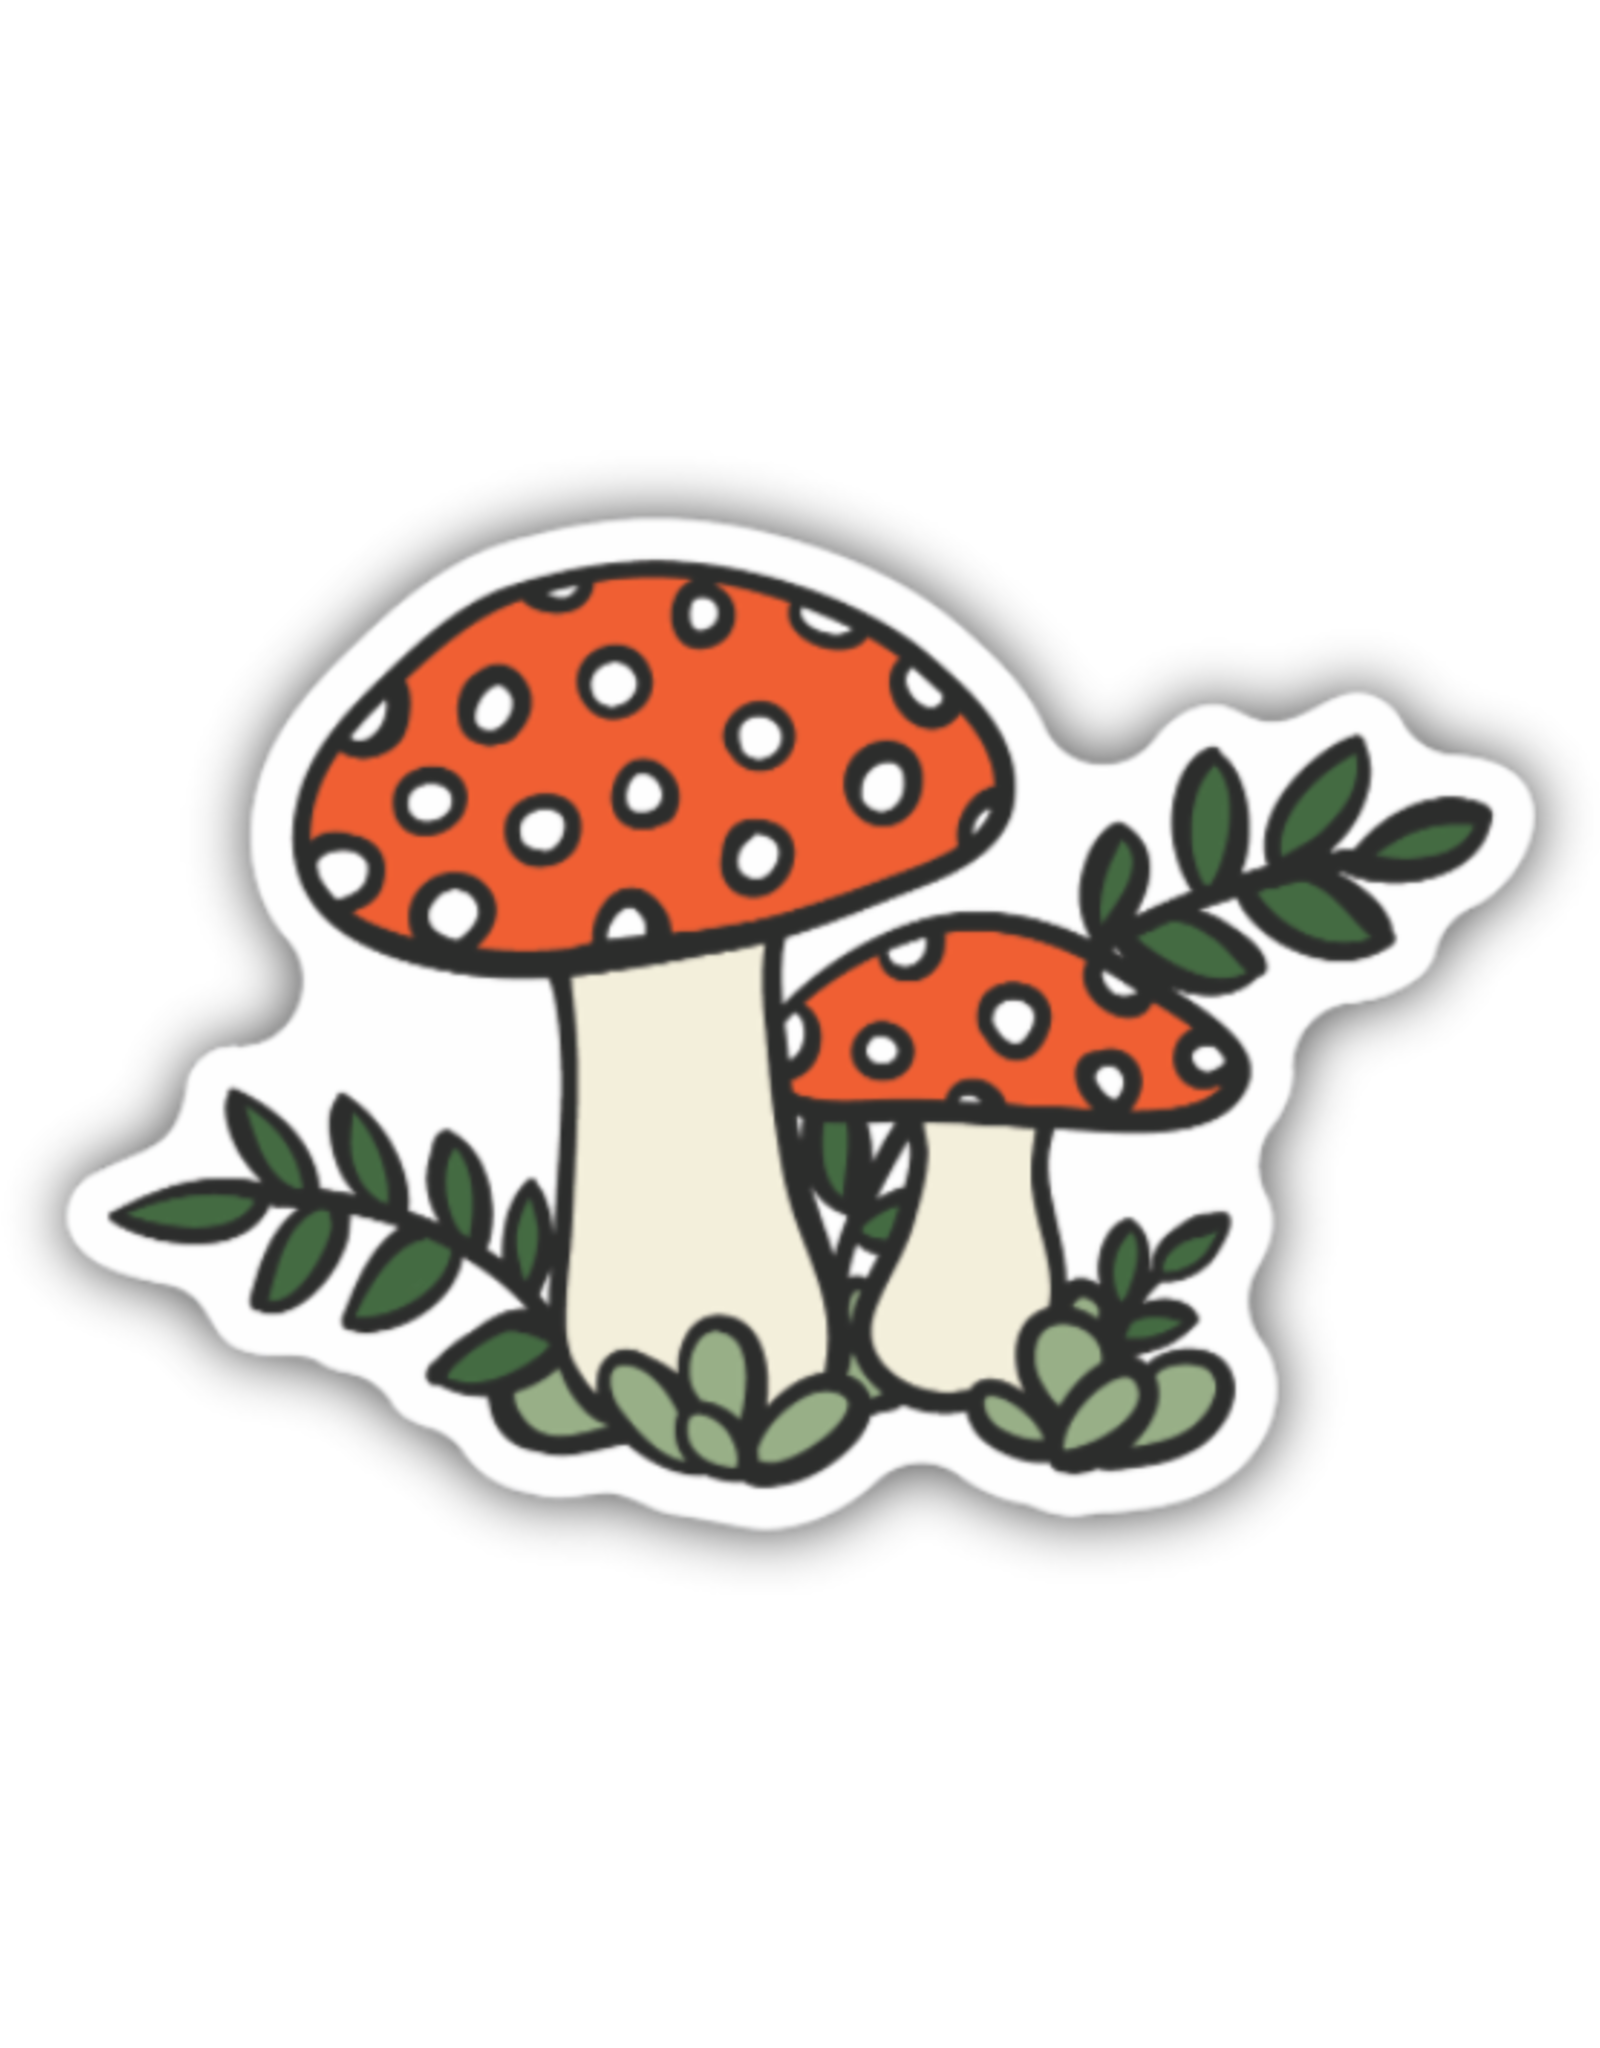 Stickers Northwest Inc. Stickers Northwest Inc. - Mushroom Sketch Sticker